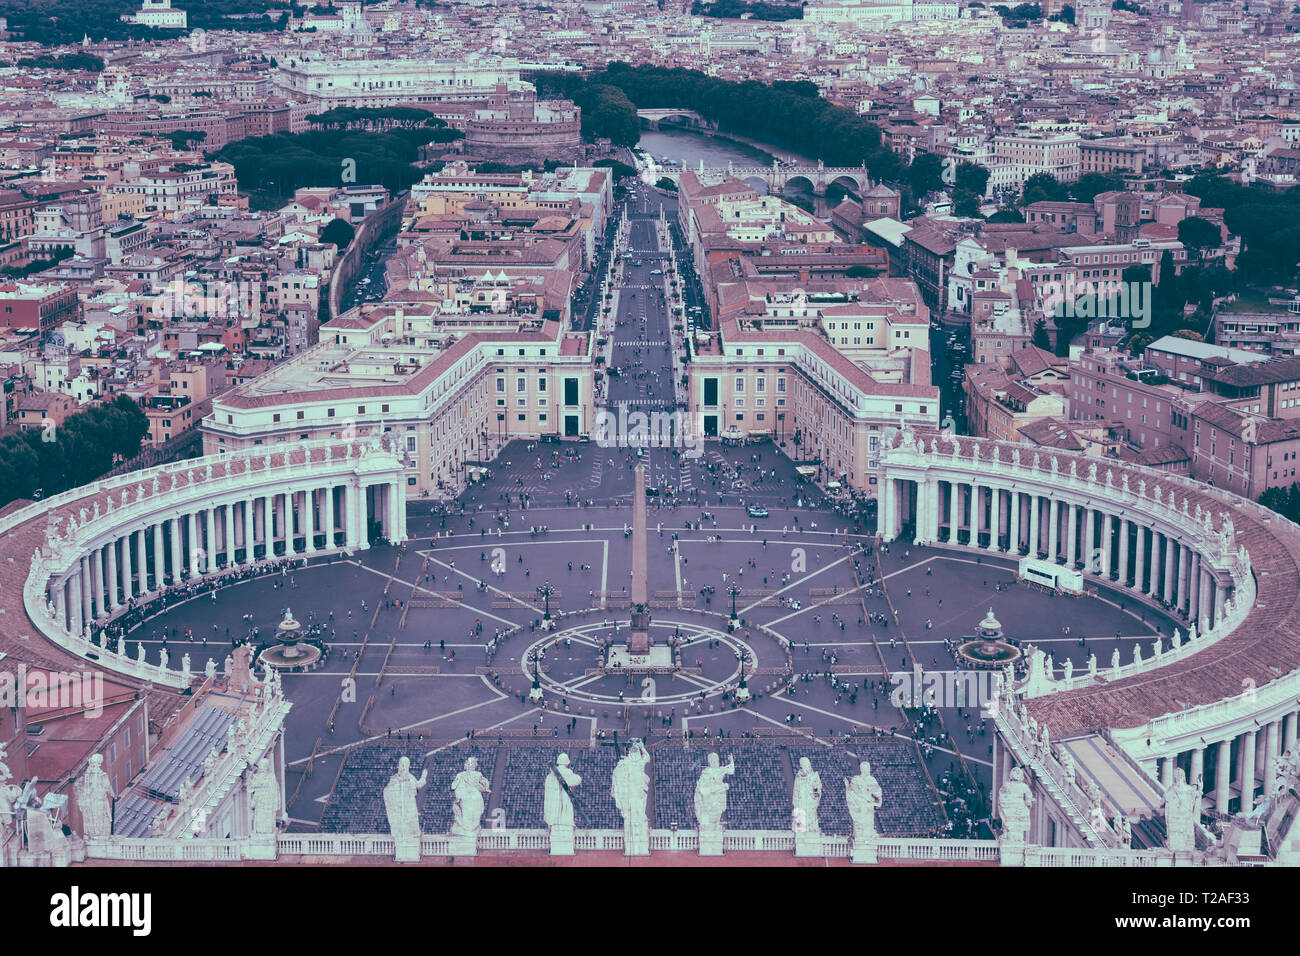 Vue panoramique sur la Place St Pierre et la ville de Rome à partir de la Basilique Papale de Saint Pierre (St. La Basilique Saint-Pierre). Journée d'été et les gens marchent sur squar Banque D'Images